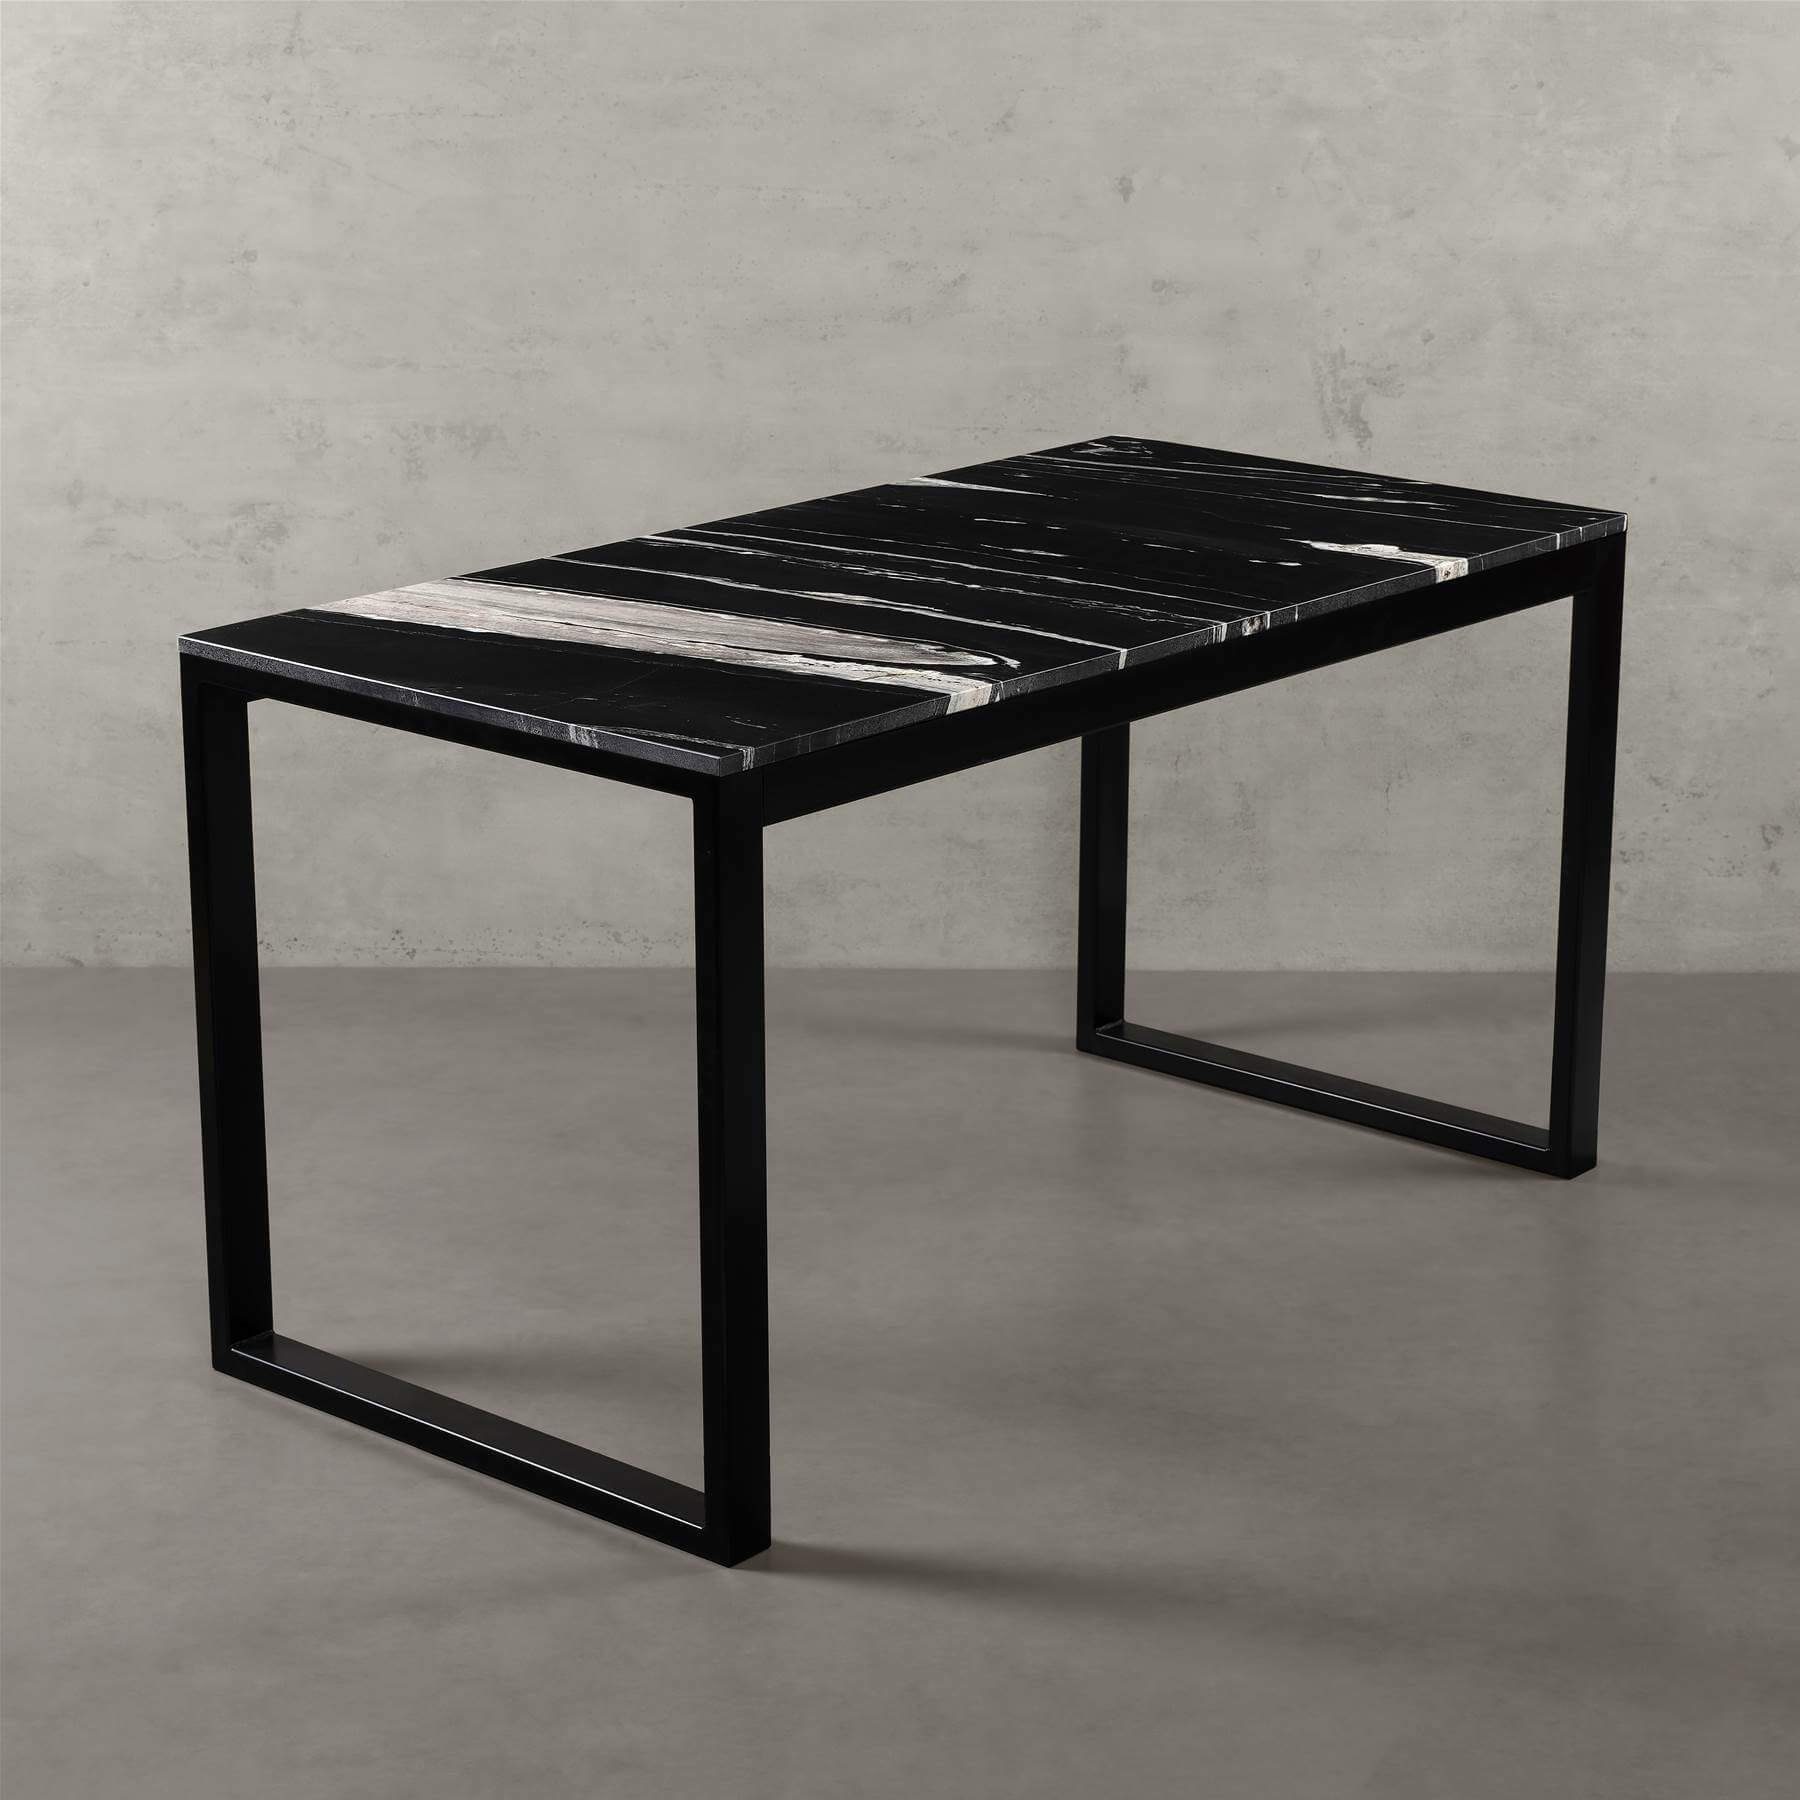 MAGNA Atelier Schreibtisch BERGEN mit ECHTEM MARMOR, Schreibtisch eckig, schwarz Metallgestell, 140cmx70cmx75cm Copacabana